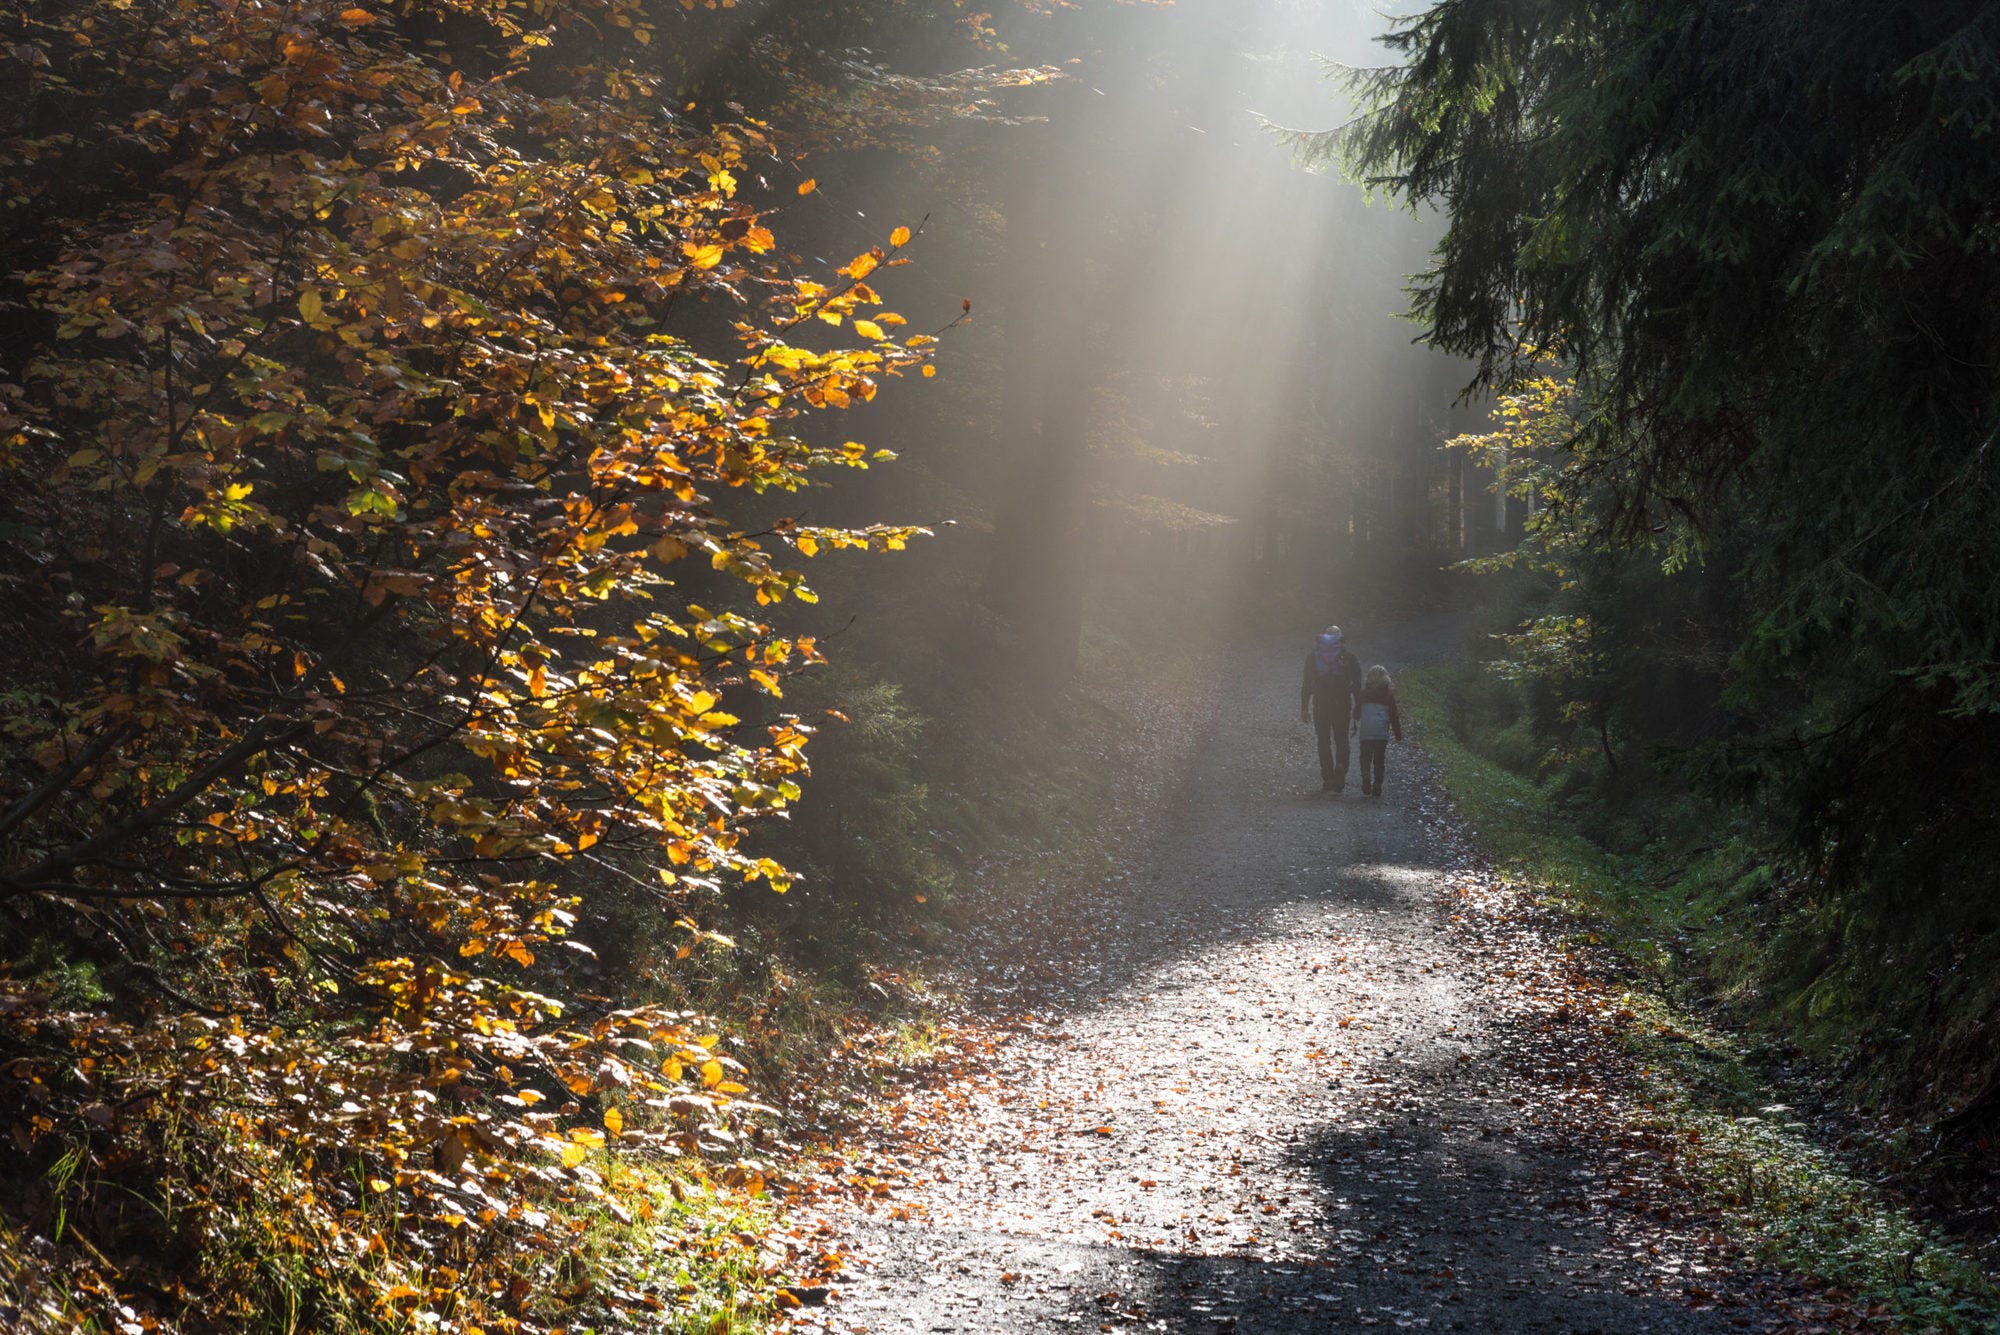 Spaziergänger mti schönem Lichteinfall im Herbstwald